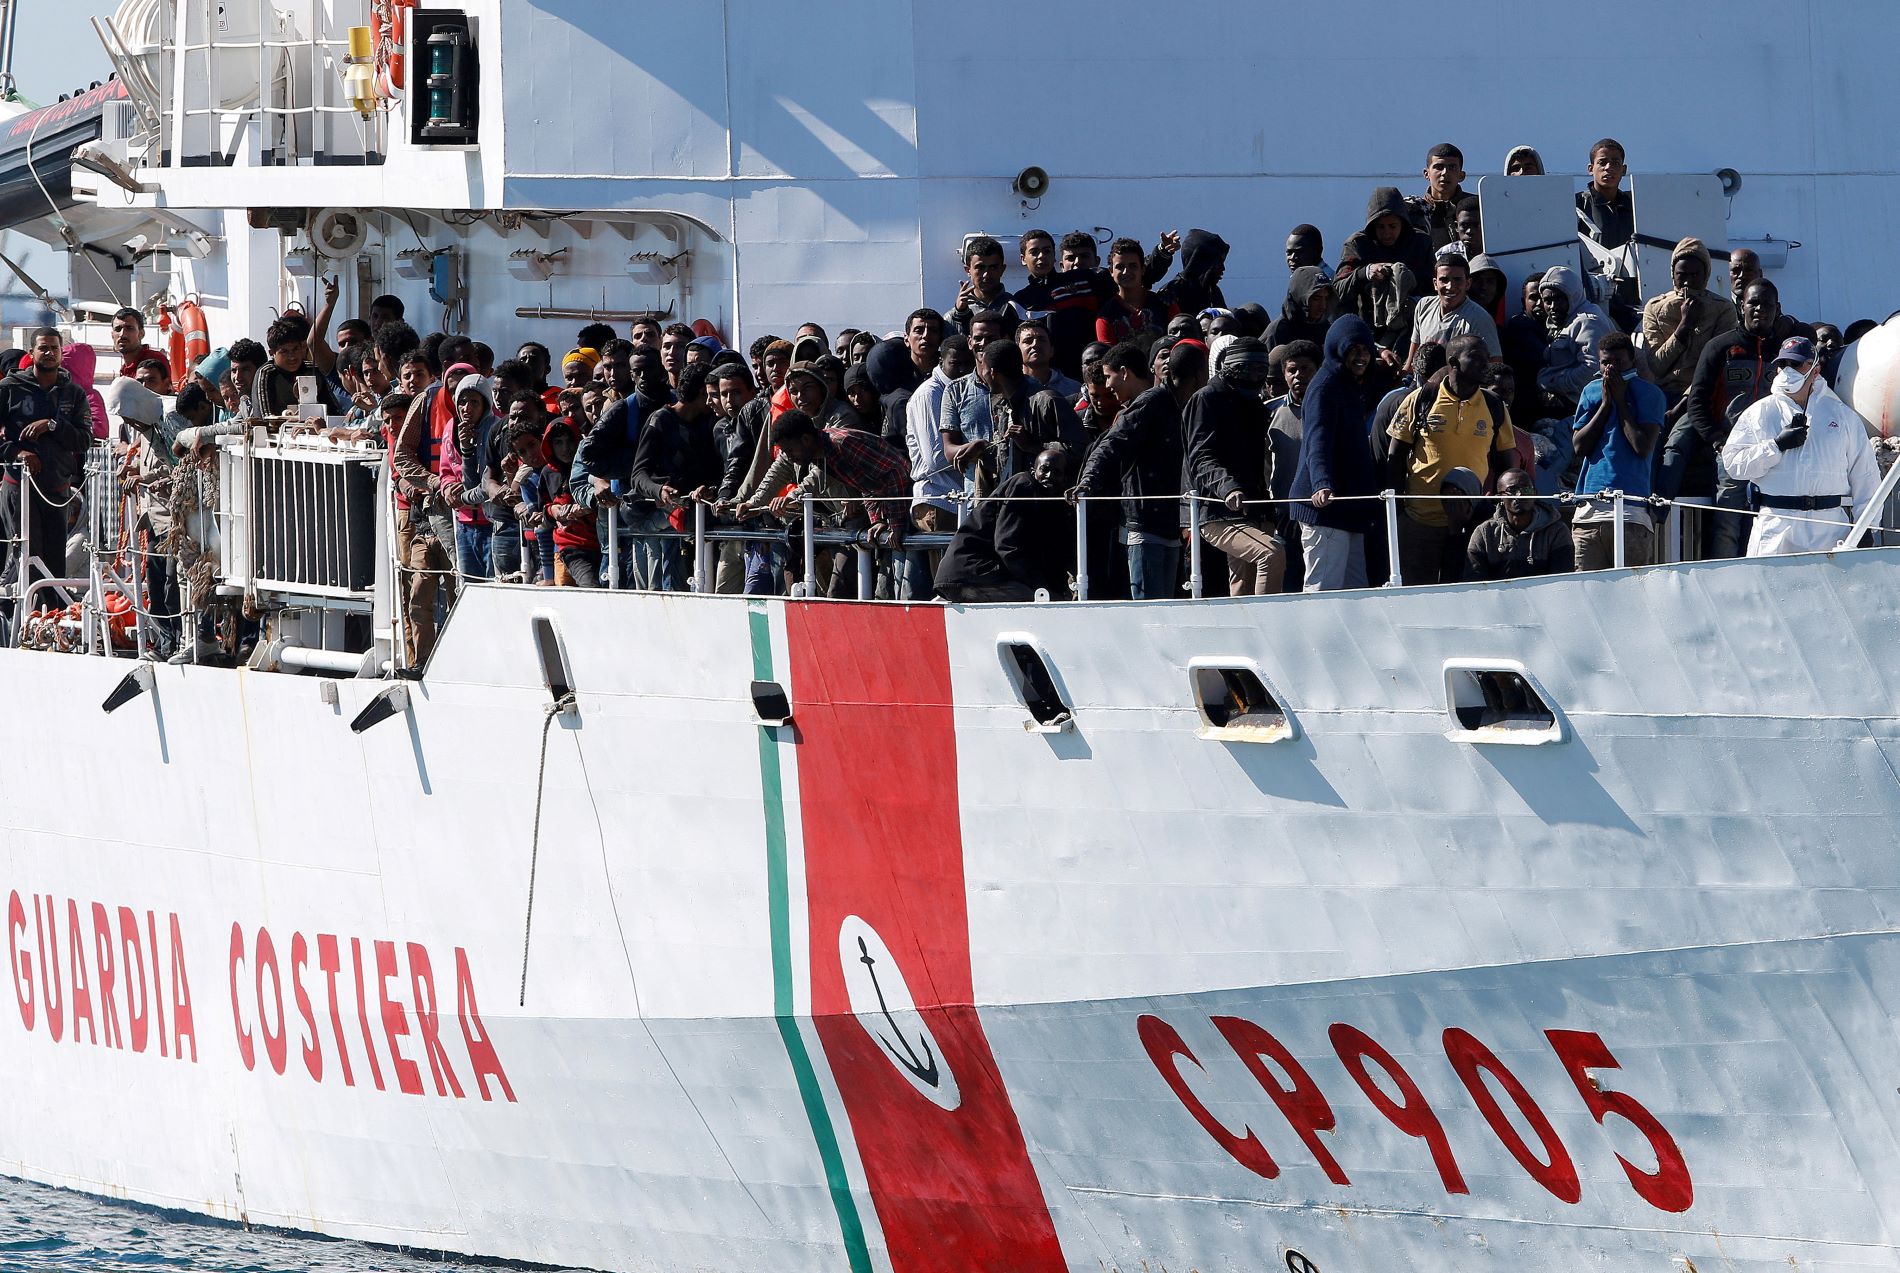 Ολοκληρώθηκε η επιχείρηση των ιταλικών δυνάμεων στο τουρκικό πλοίο Galata Seaways